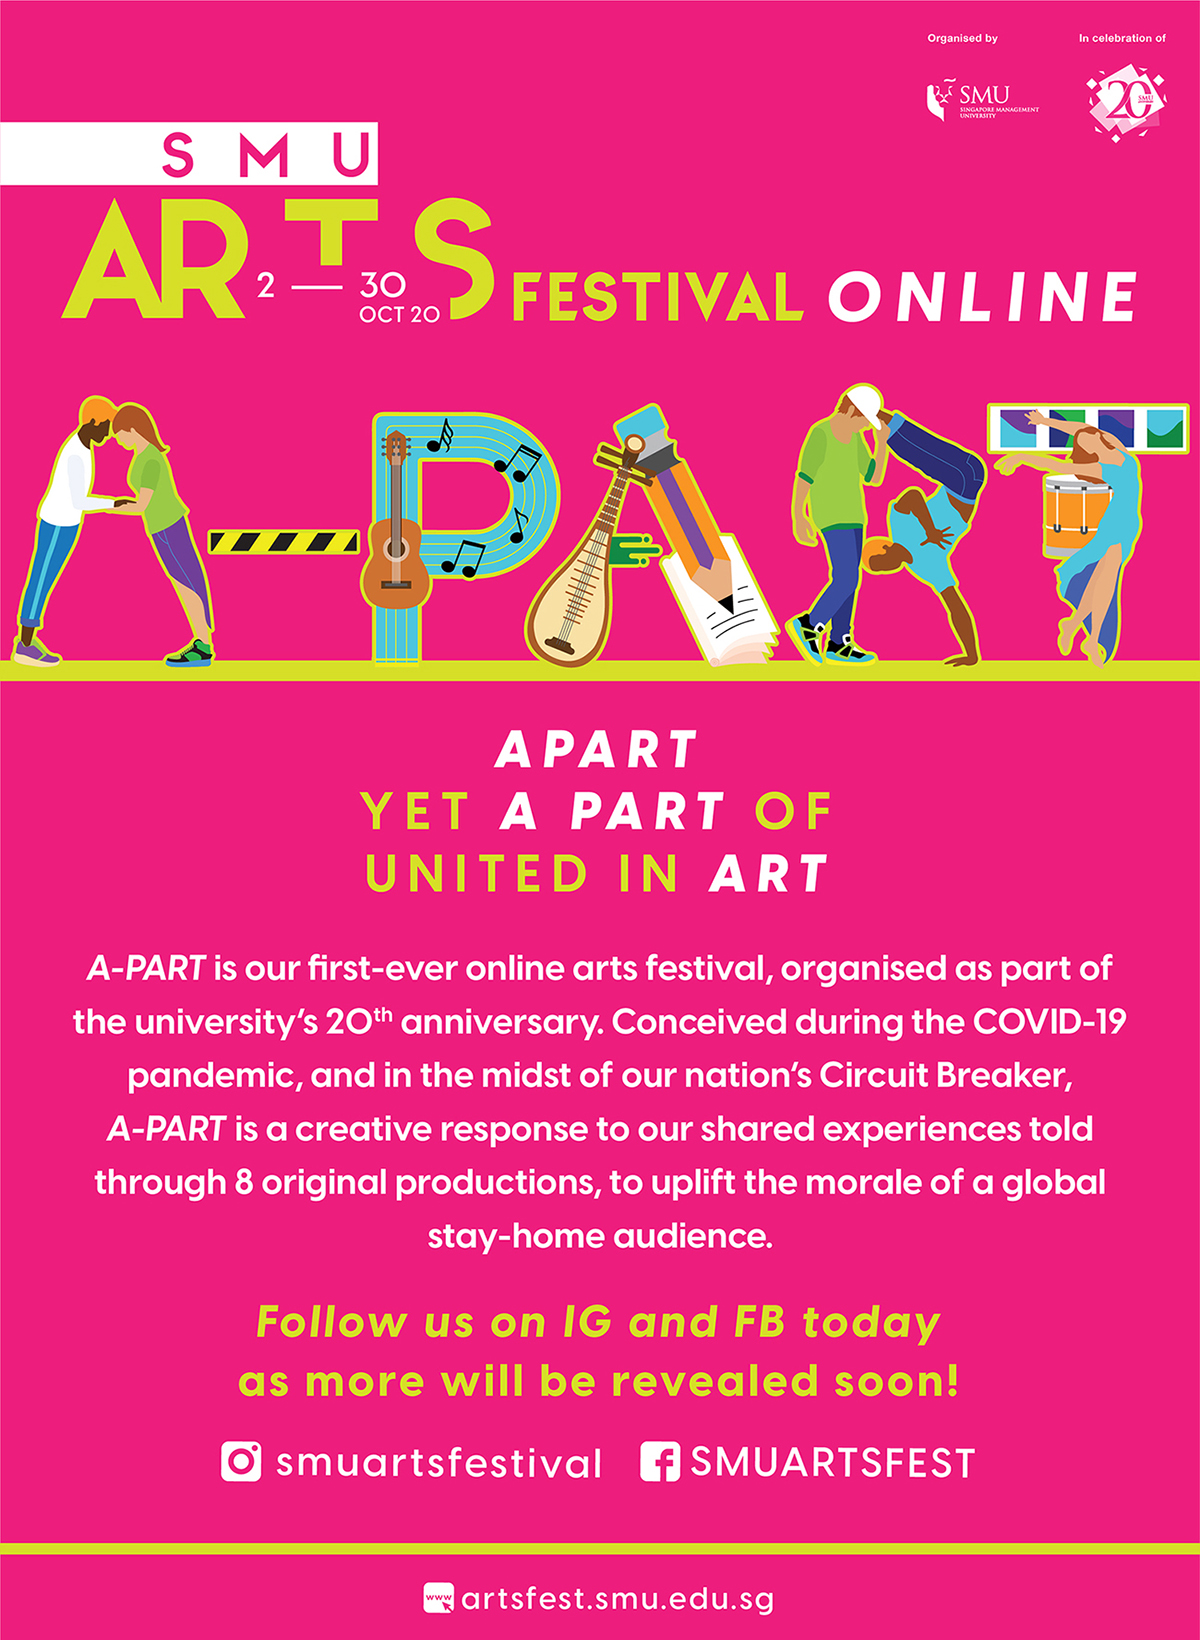 SMU Arts Festival Online